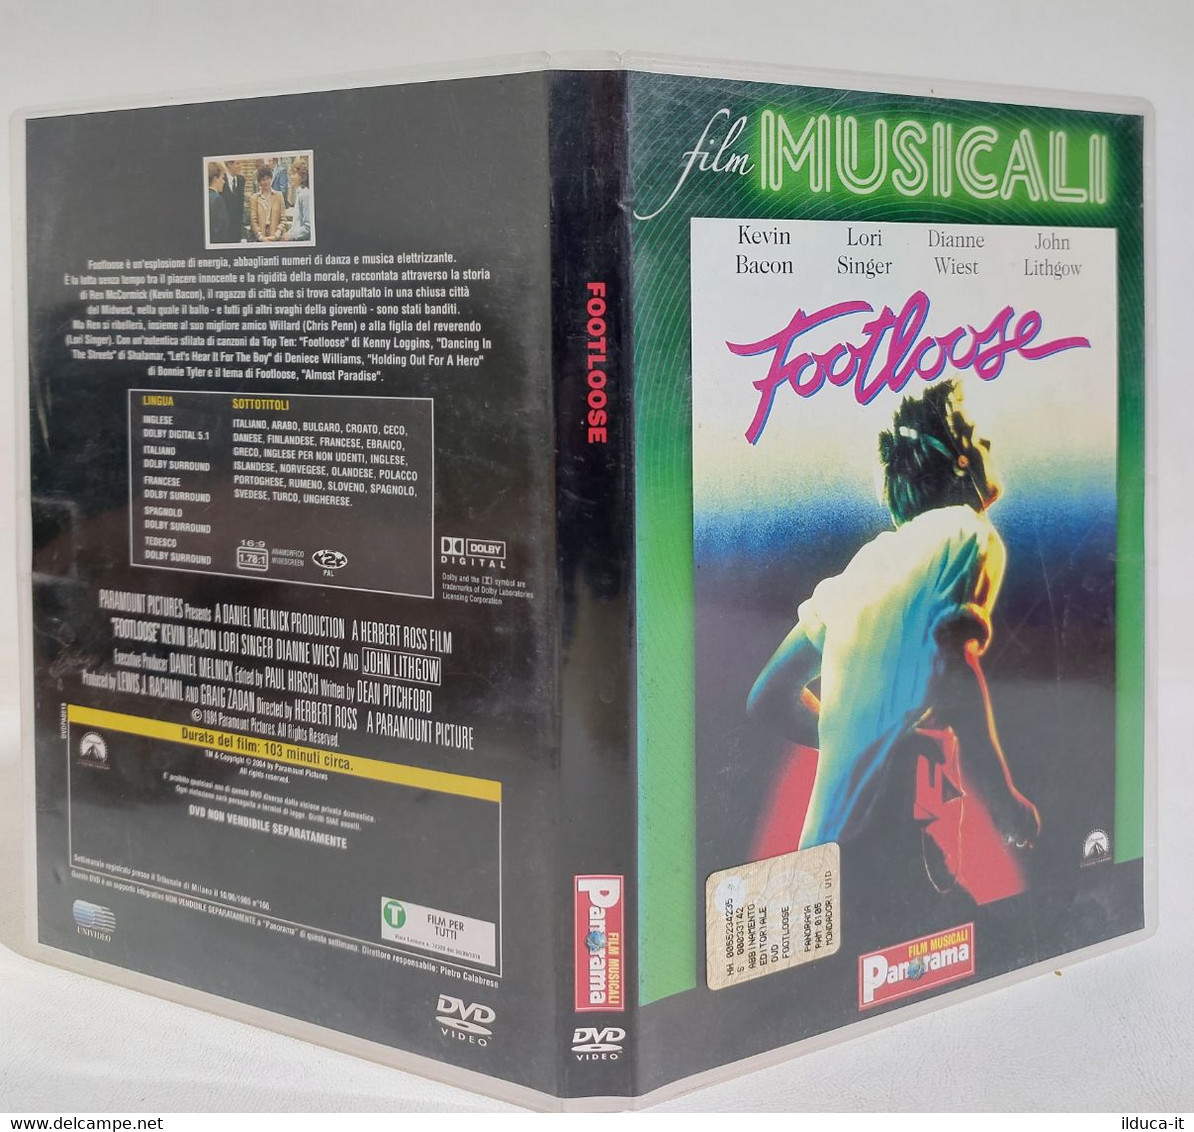 I108655 DVD - FOOTLOOSE (1984) - Kevin Bacon / Lori SInger - Musicalkomedie